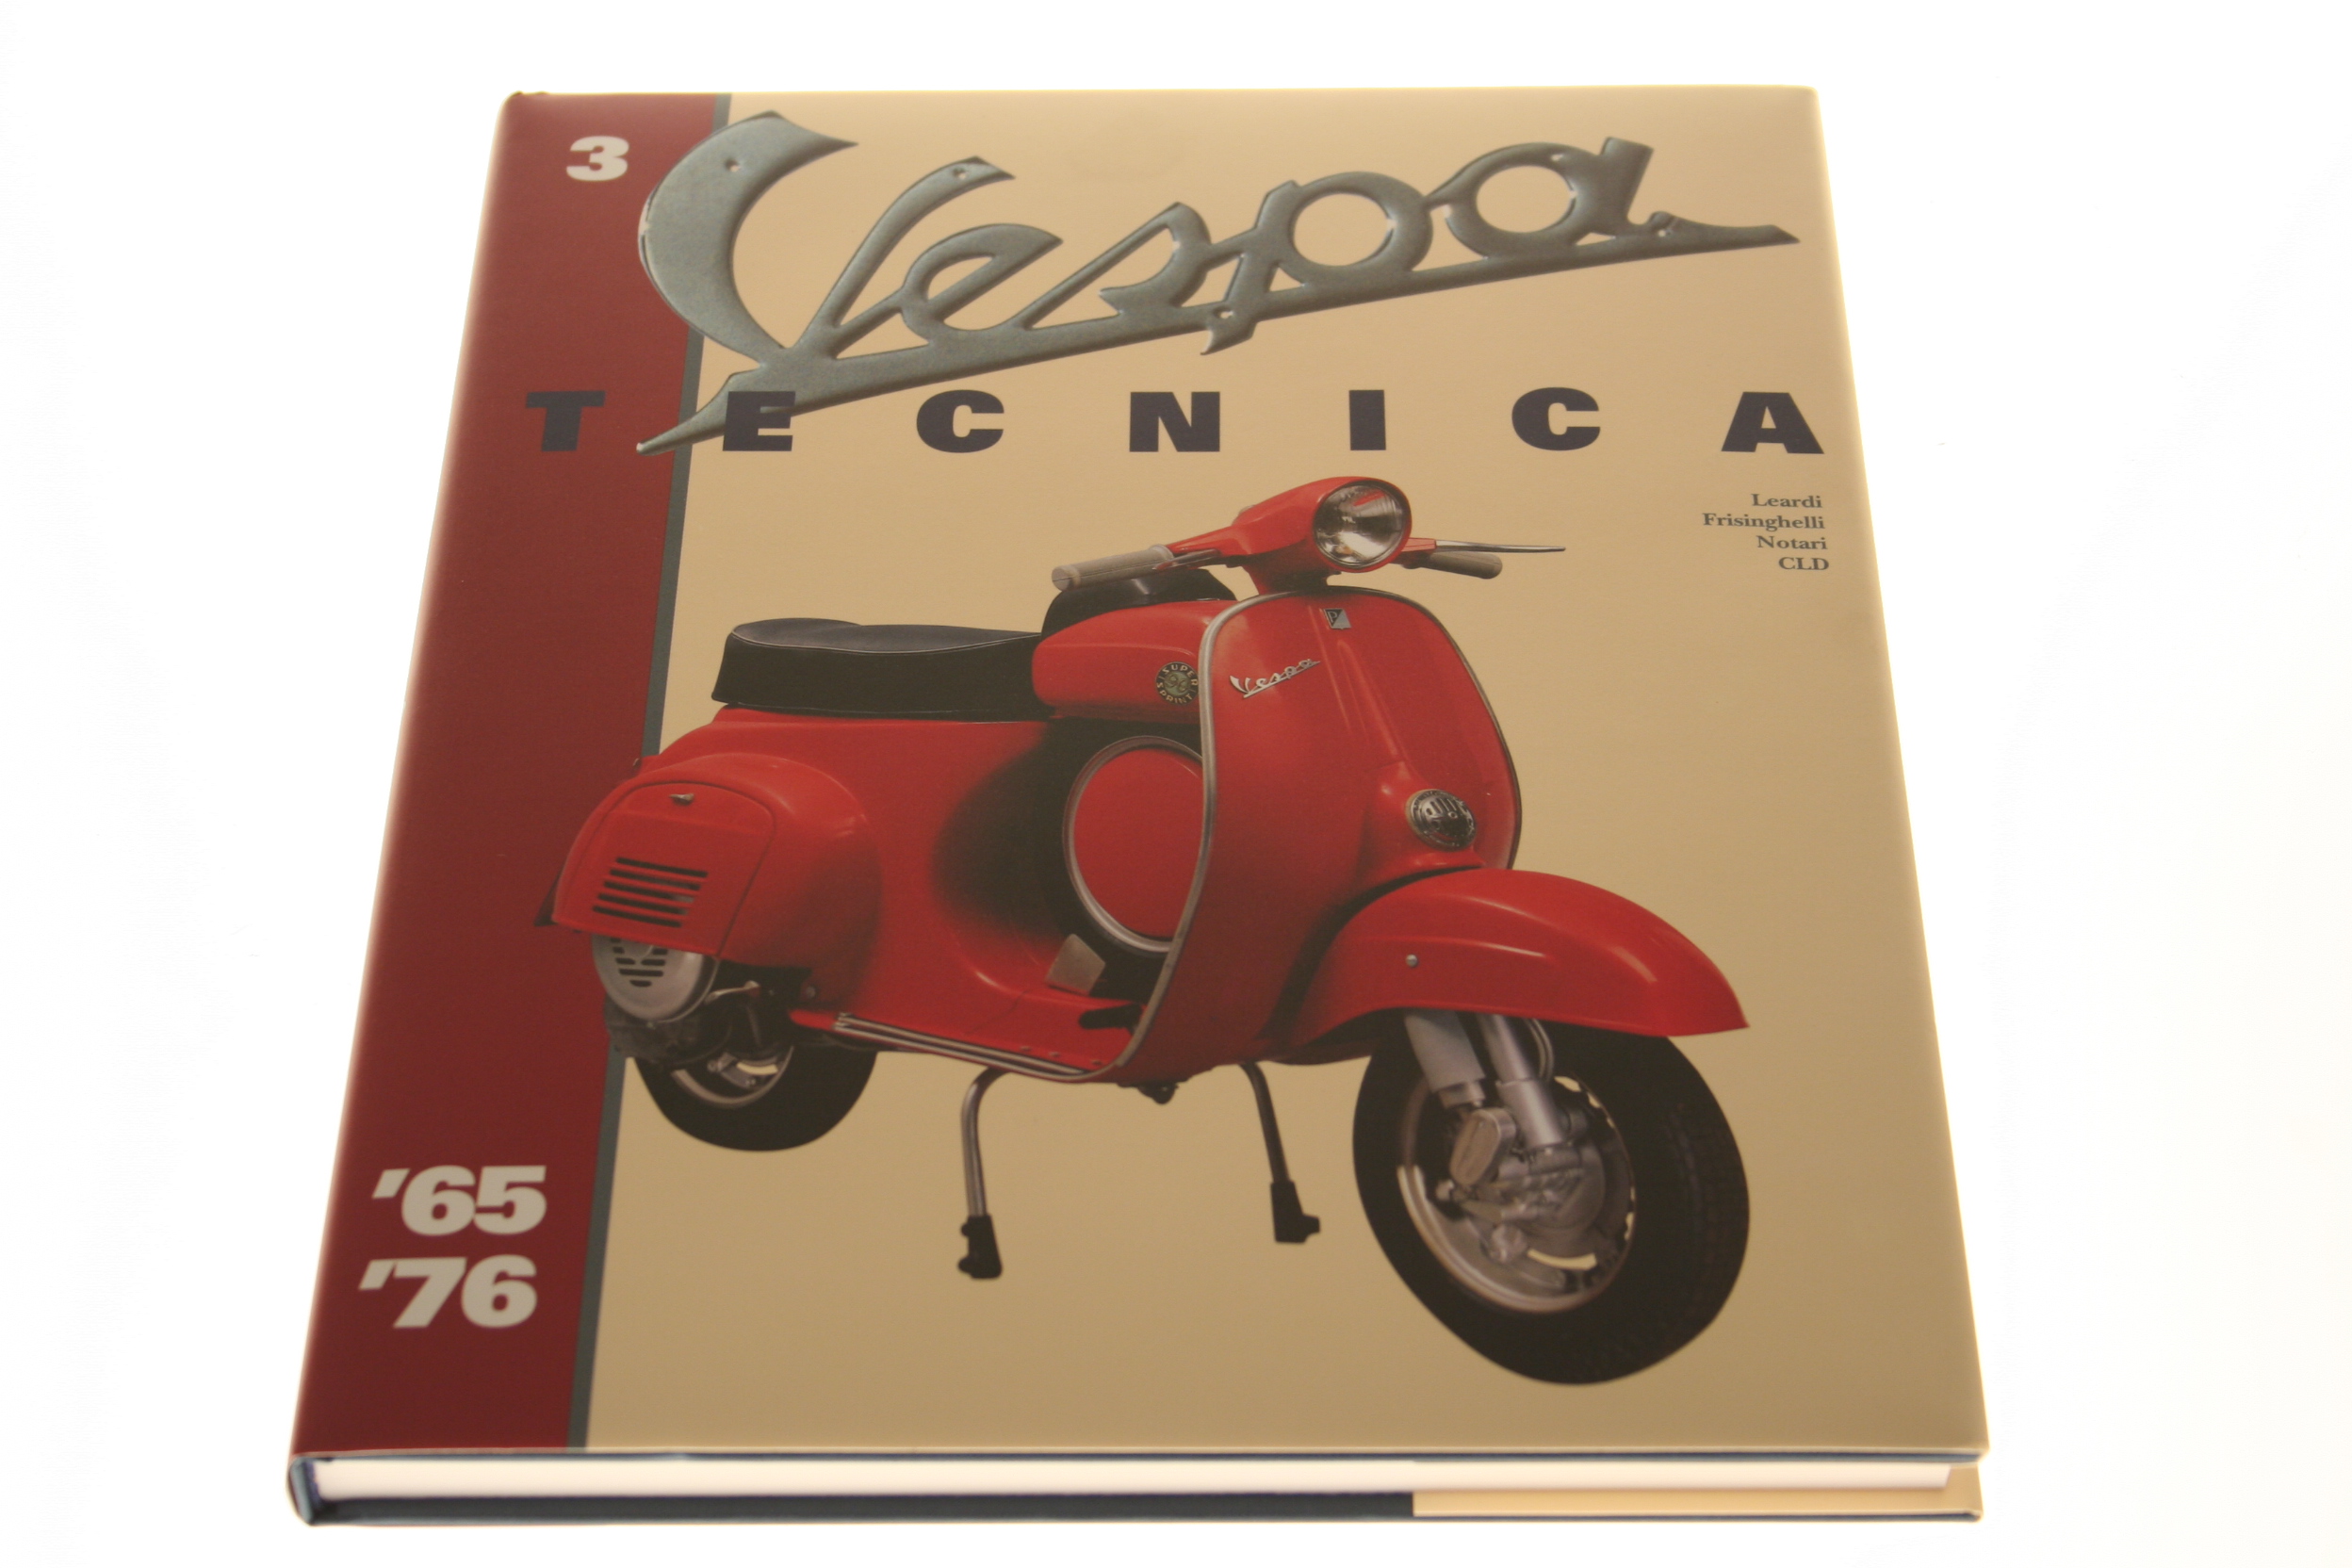 Buch Vespa "Tecnica" 3, von 1965-1976, deutsch